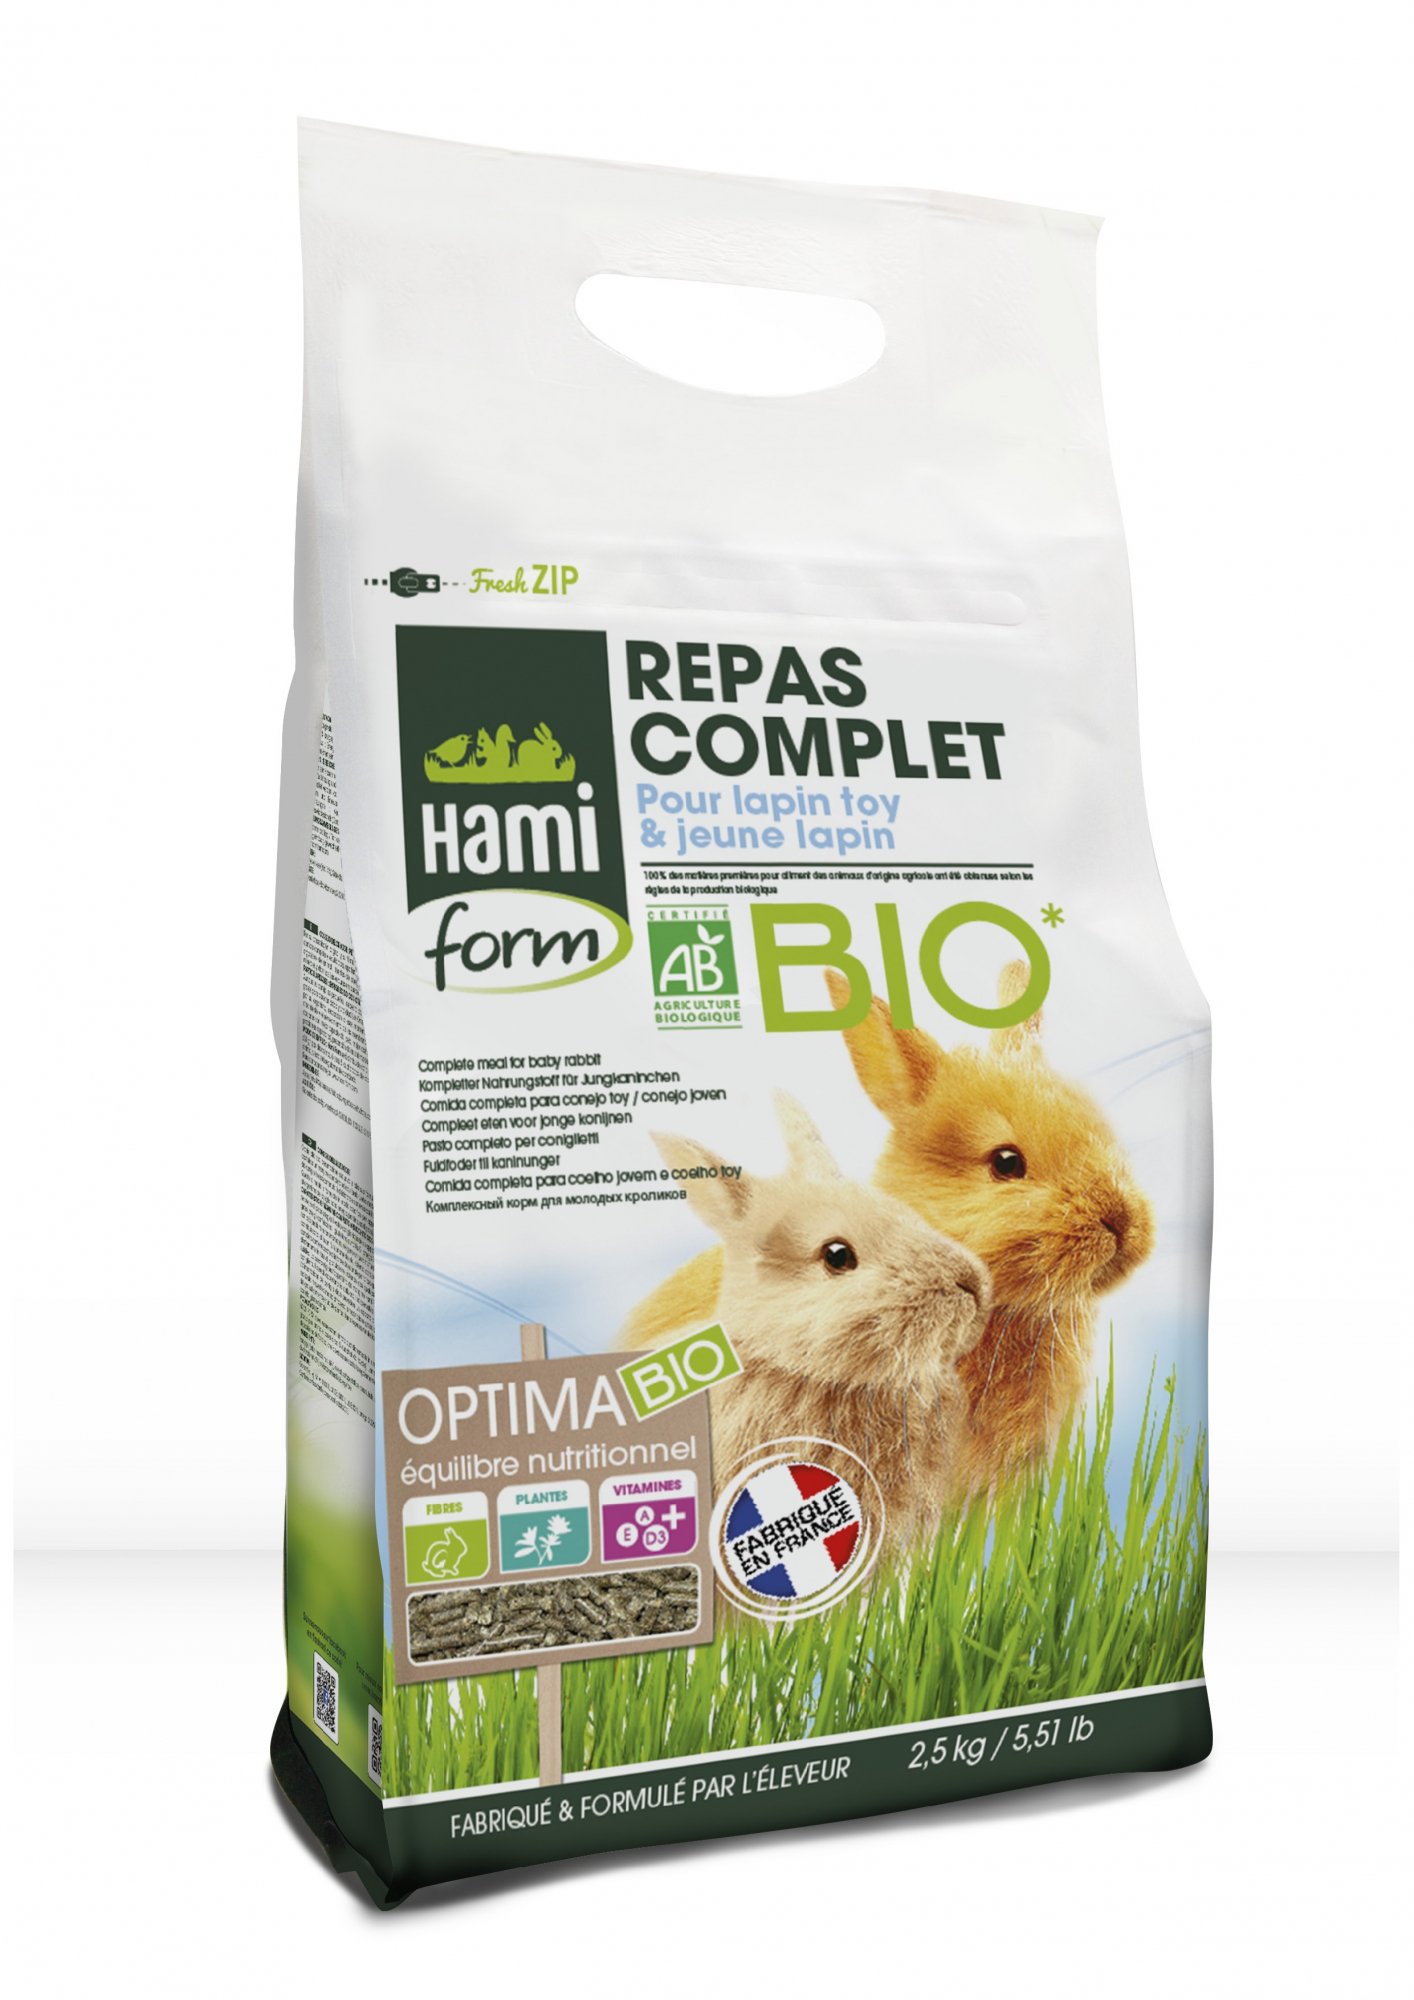 Hamiform Pasto completo biologico per coniglietto